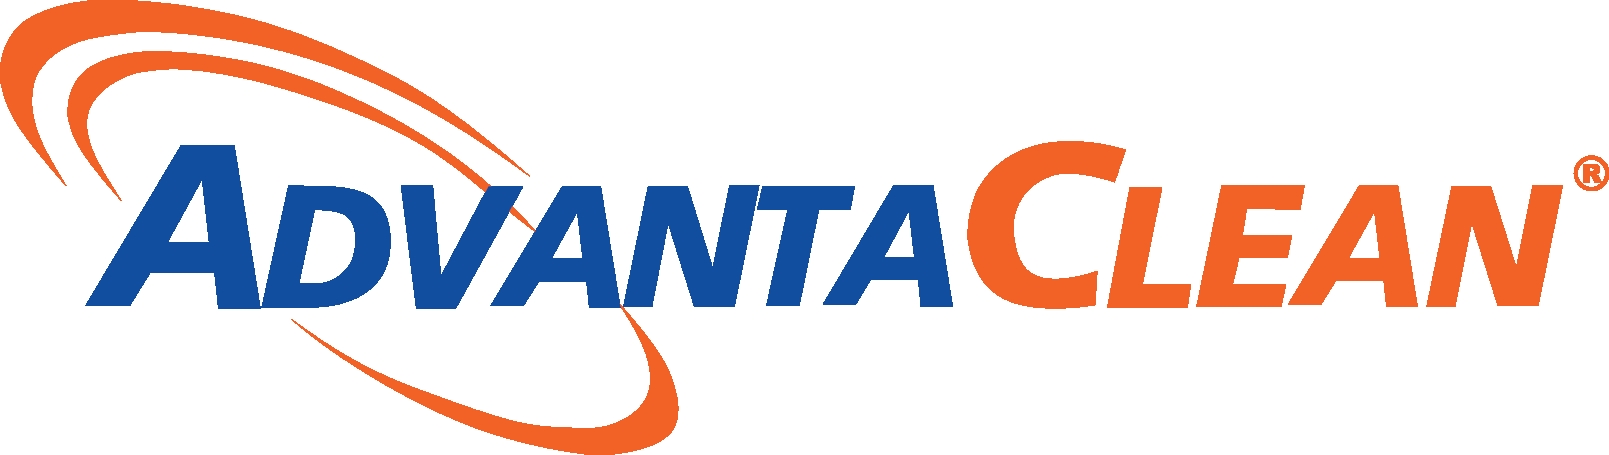 AdvantaClean Systems, Inc. Company Logo